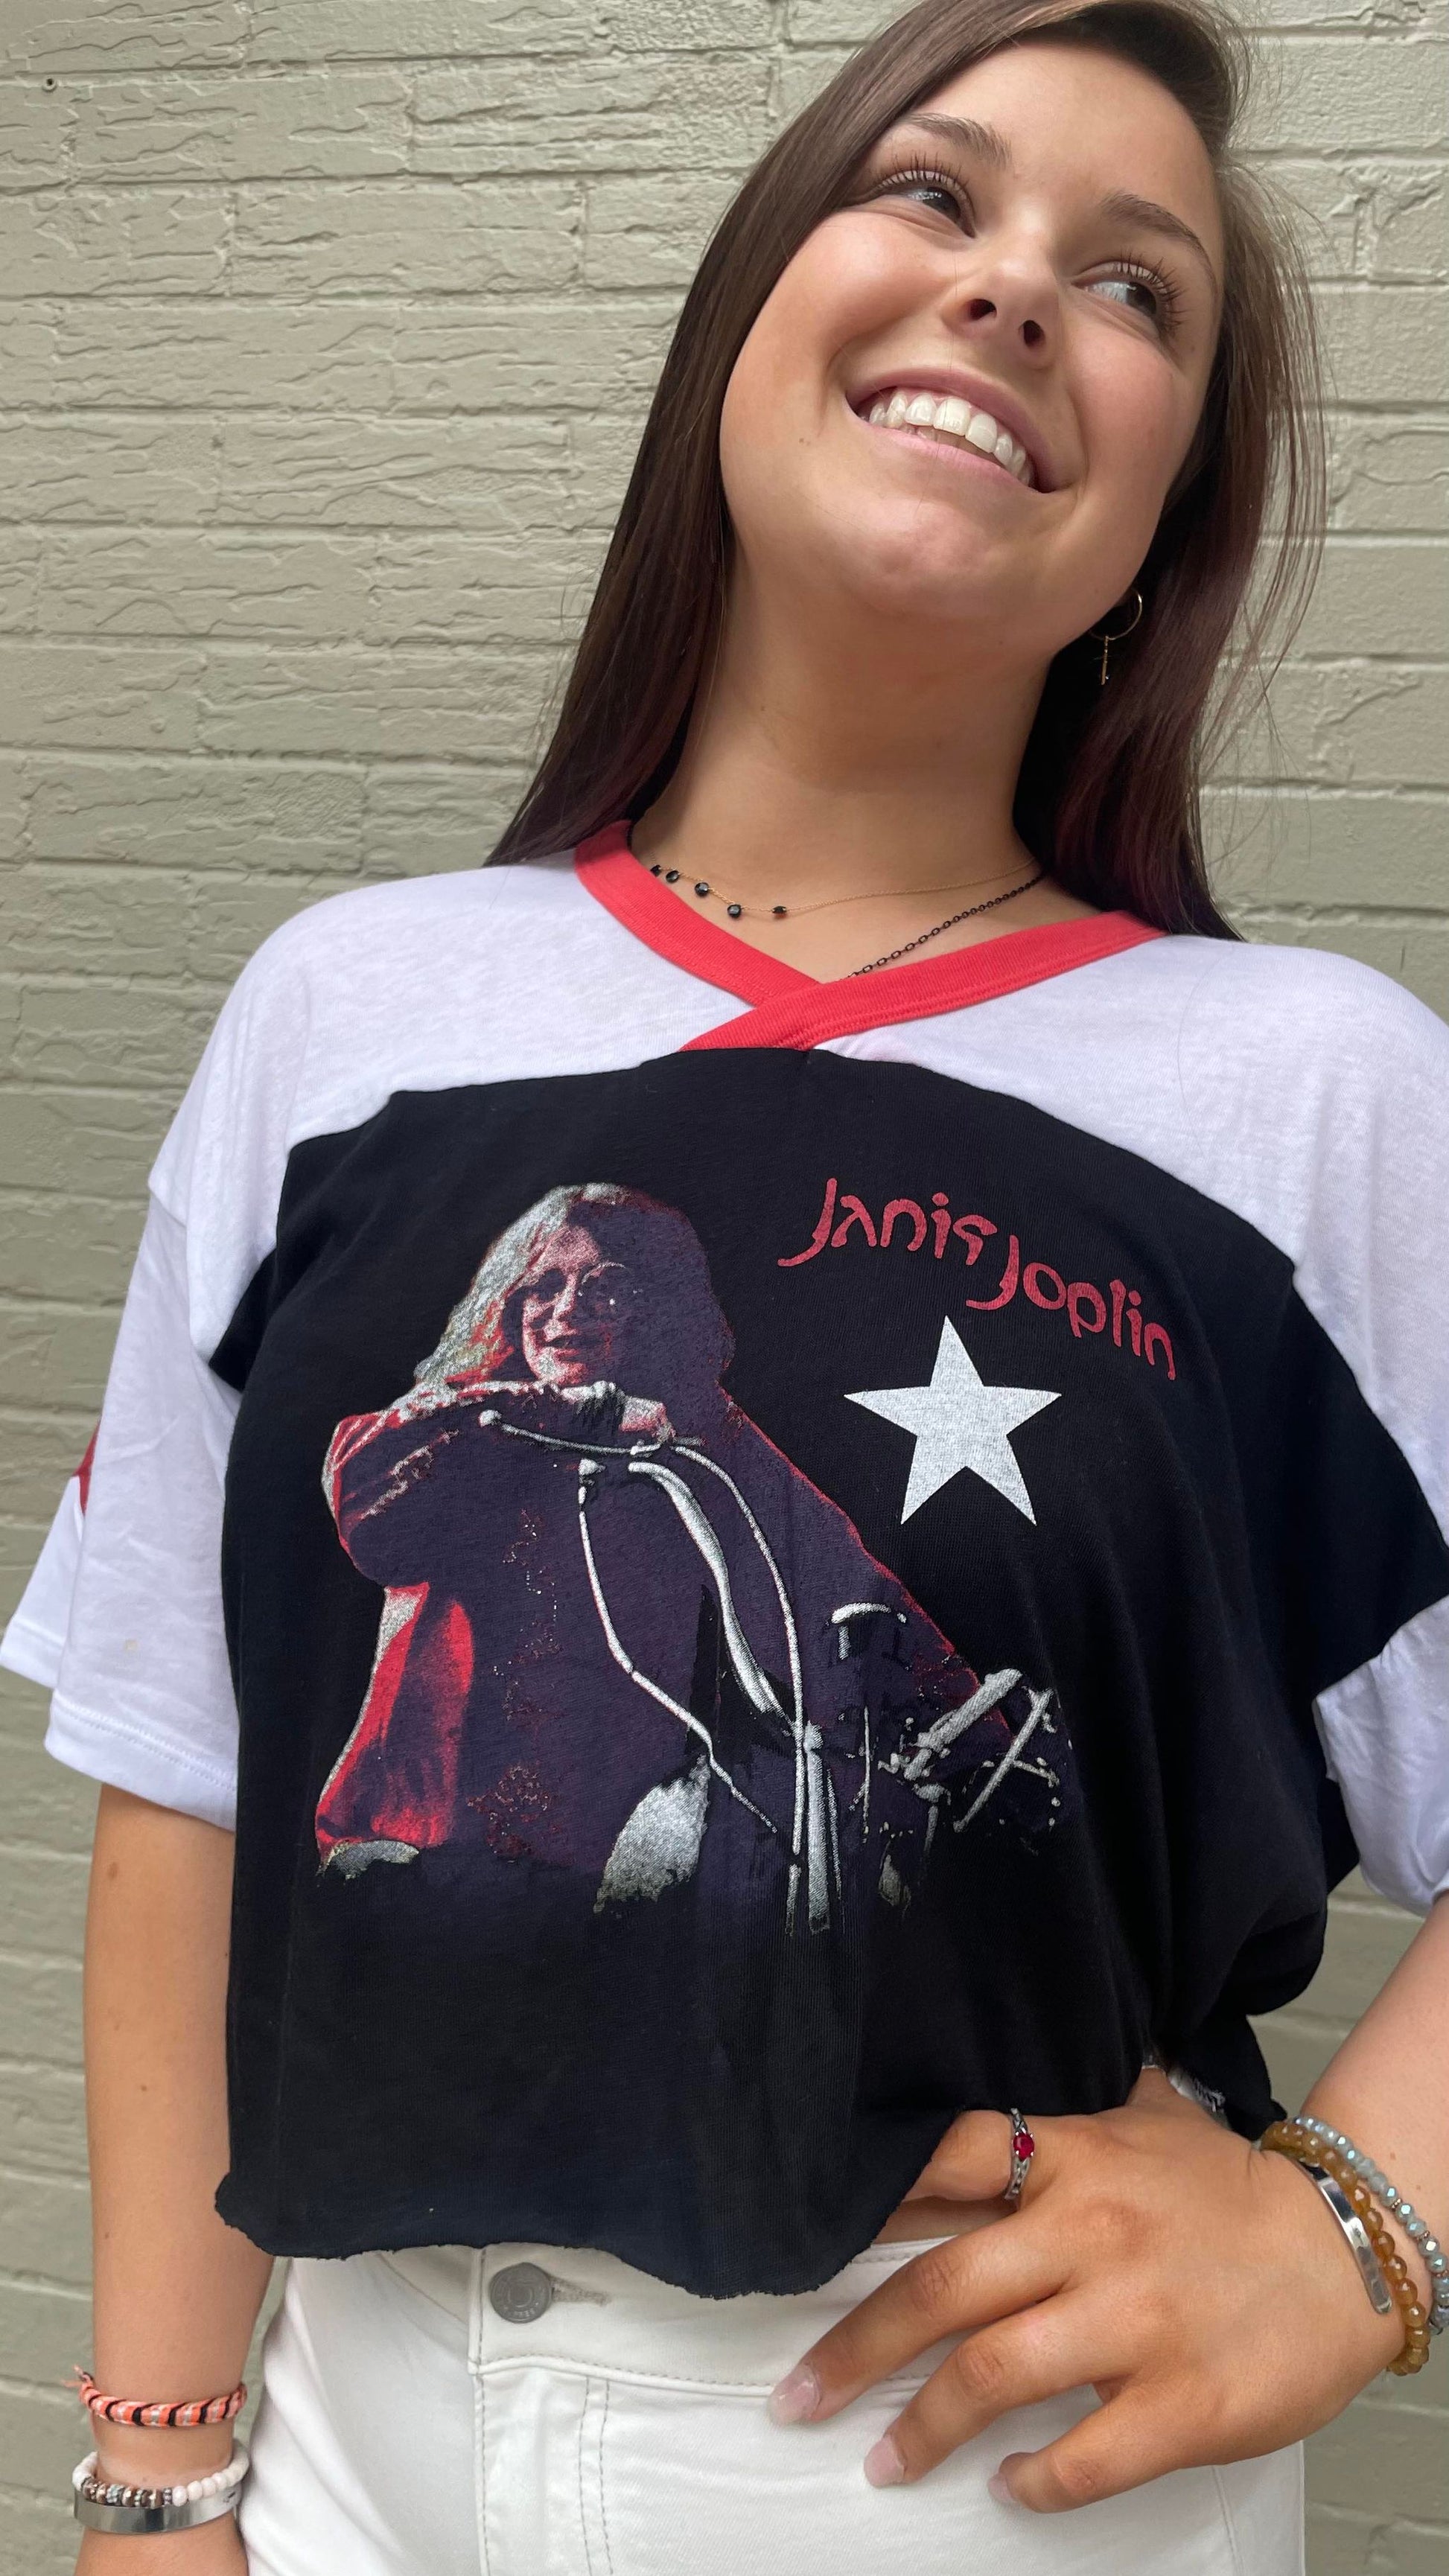 Janis Joplin Classic Motorcycle Tee - La De Da